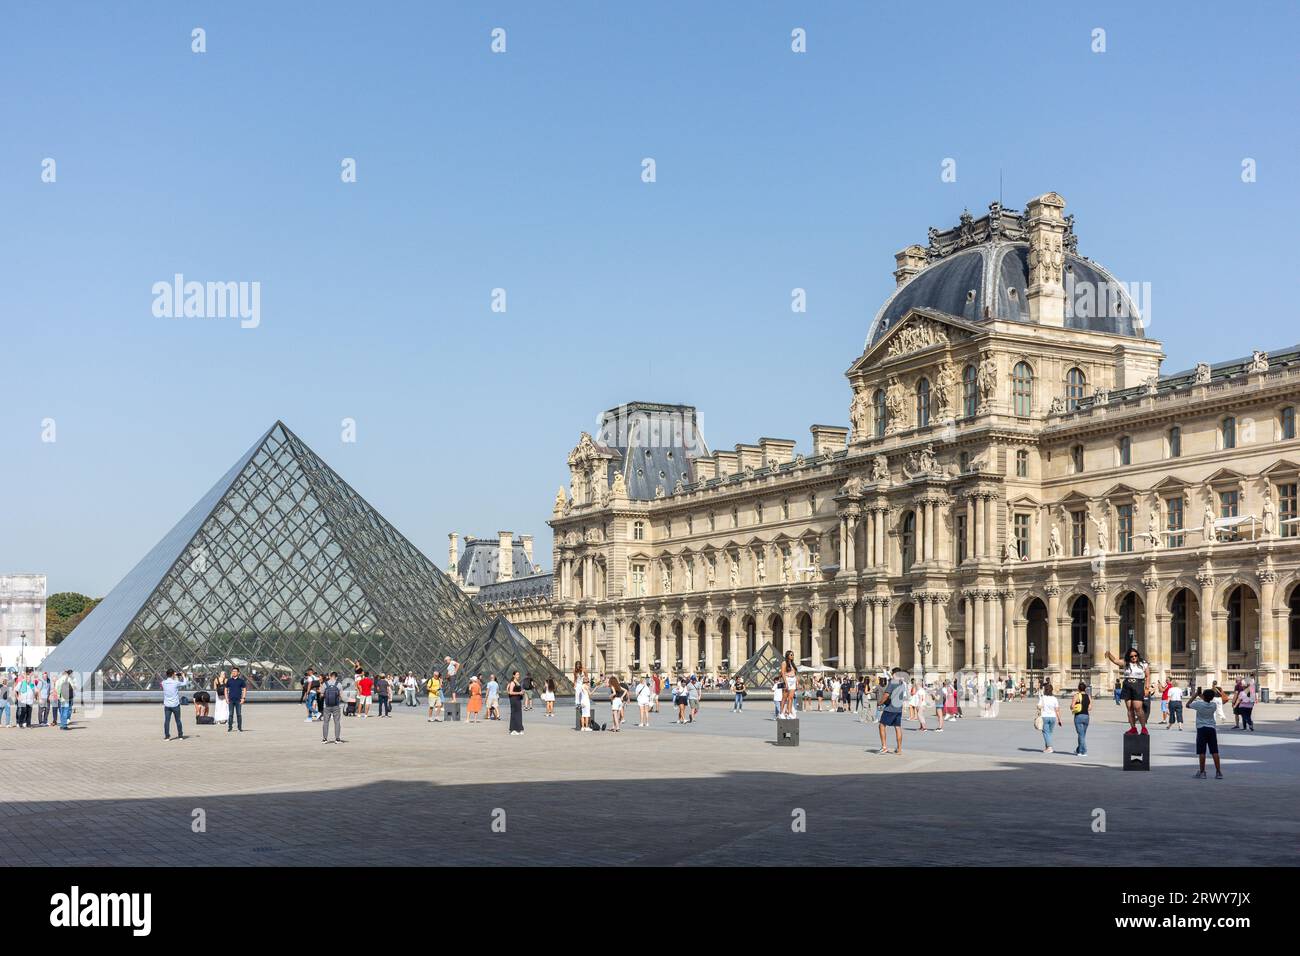 Musée du Louvre (Musée du Louvre) et Pyramide de Leoh Ming, place du carrousel, Paris, Île-de-France, France Banque D'Images